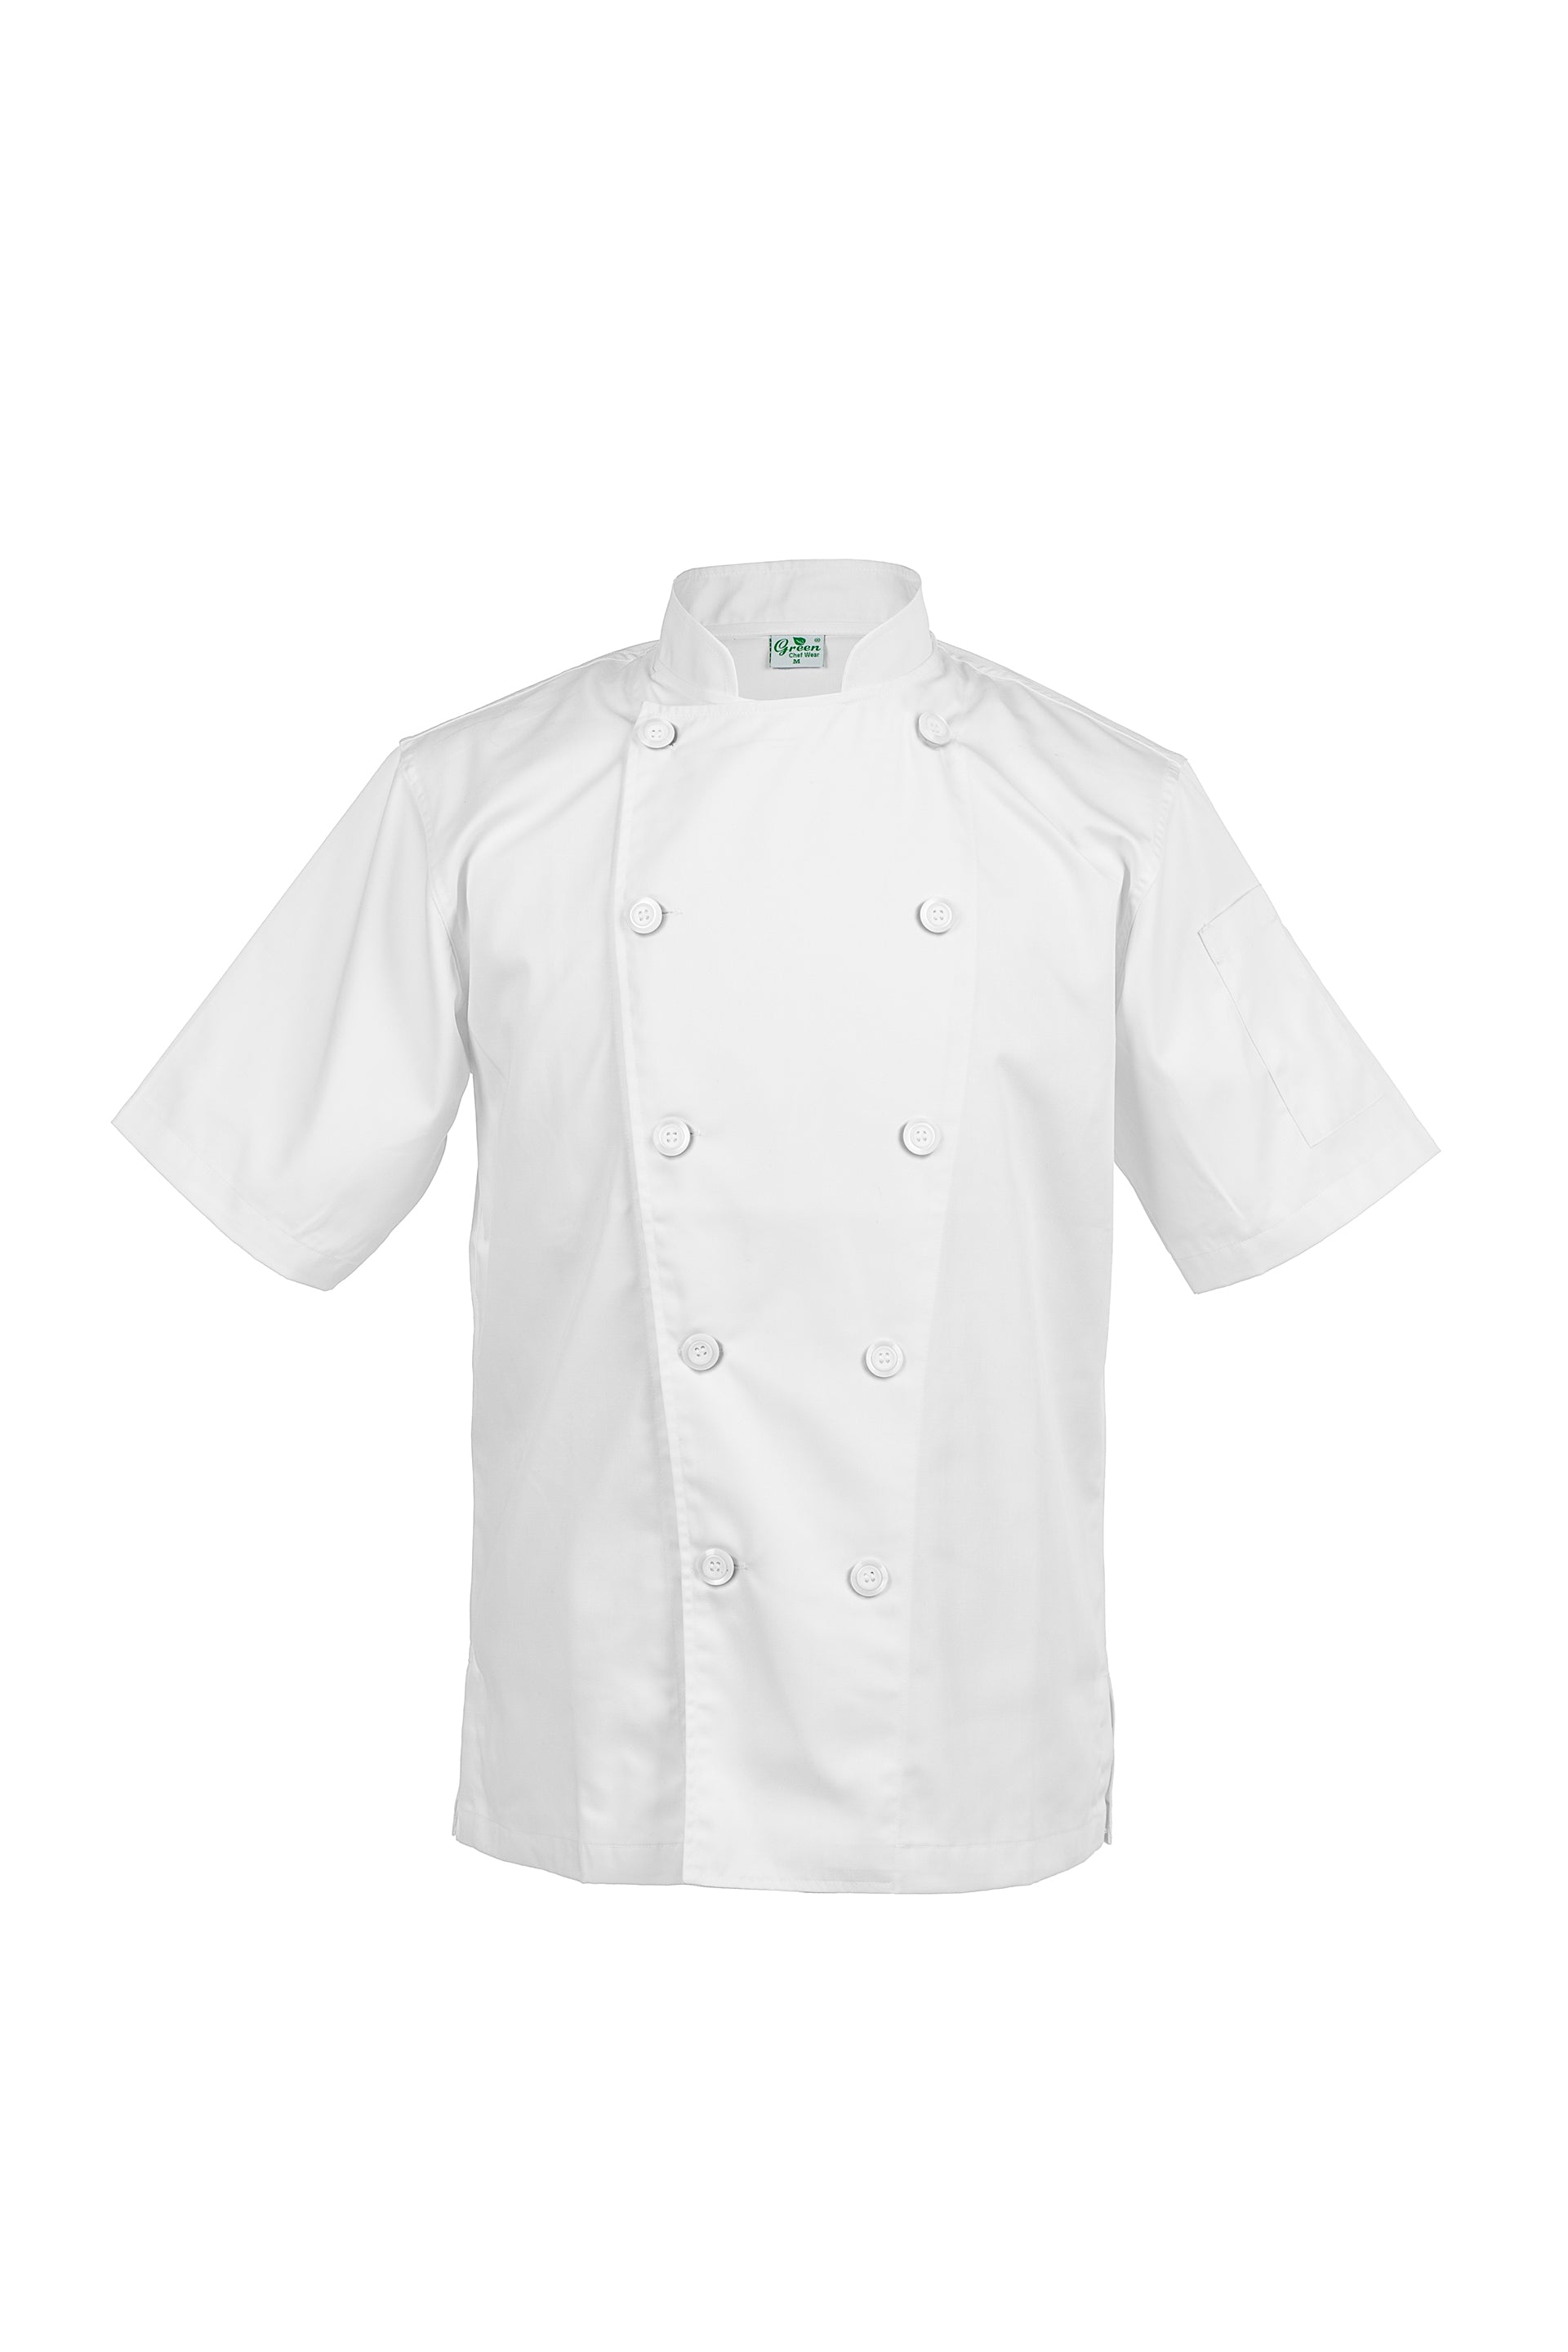 Classic White, Short Sleeve chef jacket